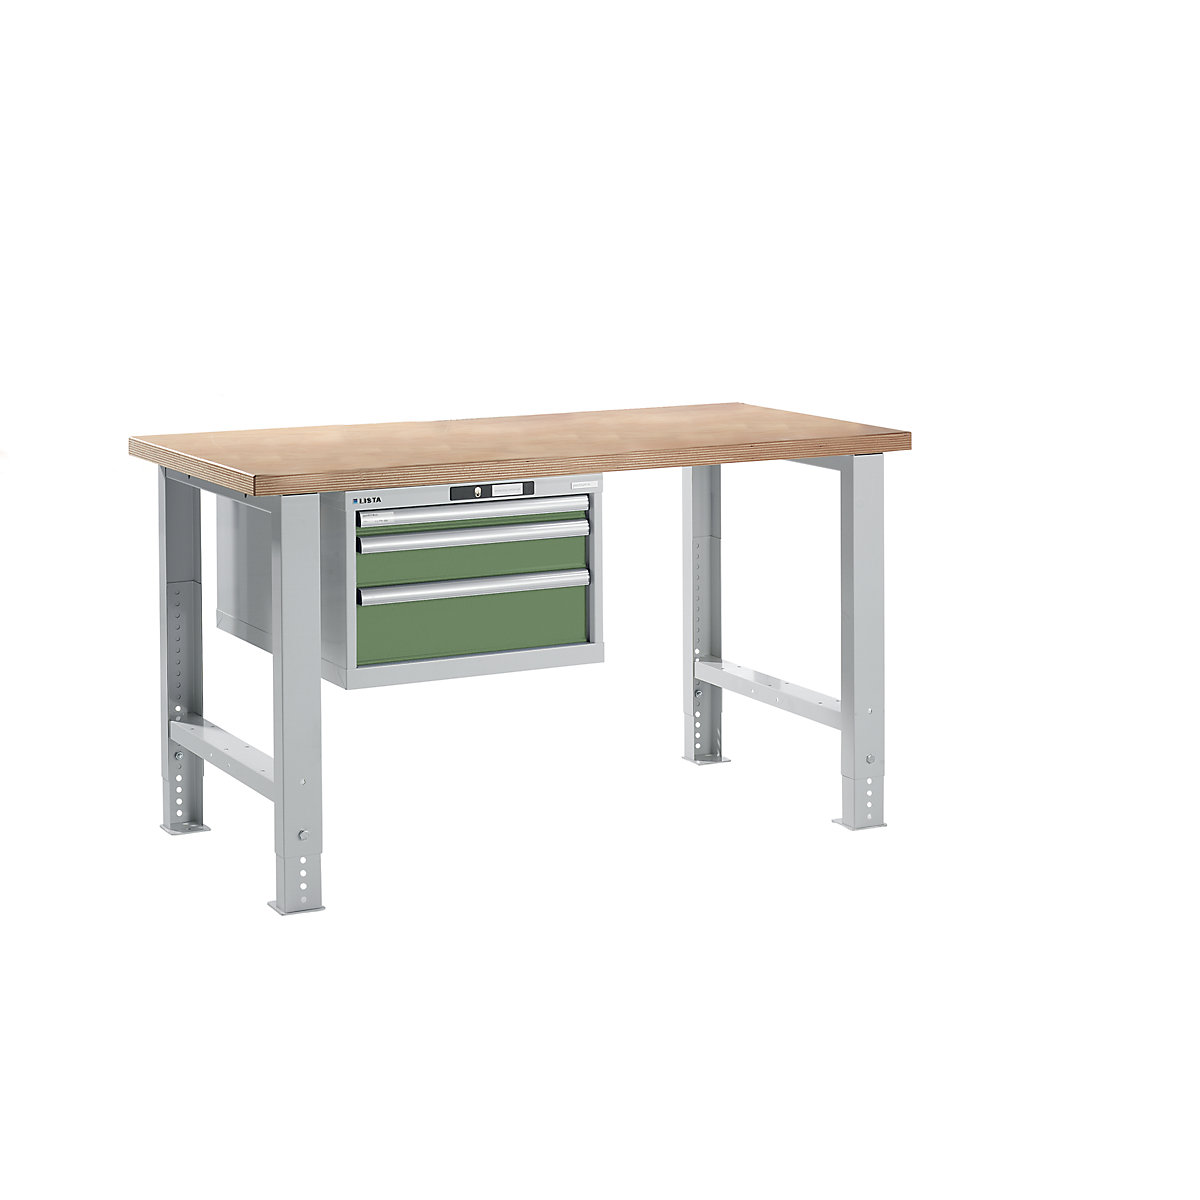 Dielenský stôl v stavebnicovom systéme – LISTA, výška 740 – 1090 mm, závesná skriňa, 3 zásuvky, rezedová zelená, šírka stola 1500 mm-14